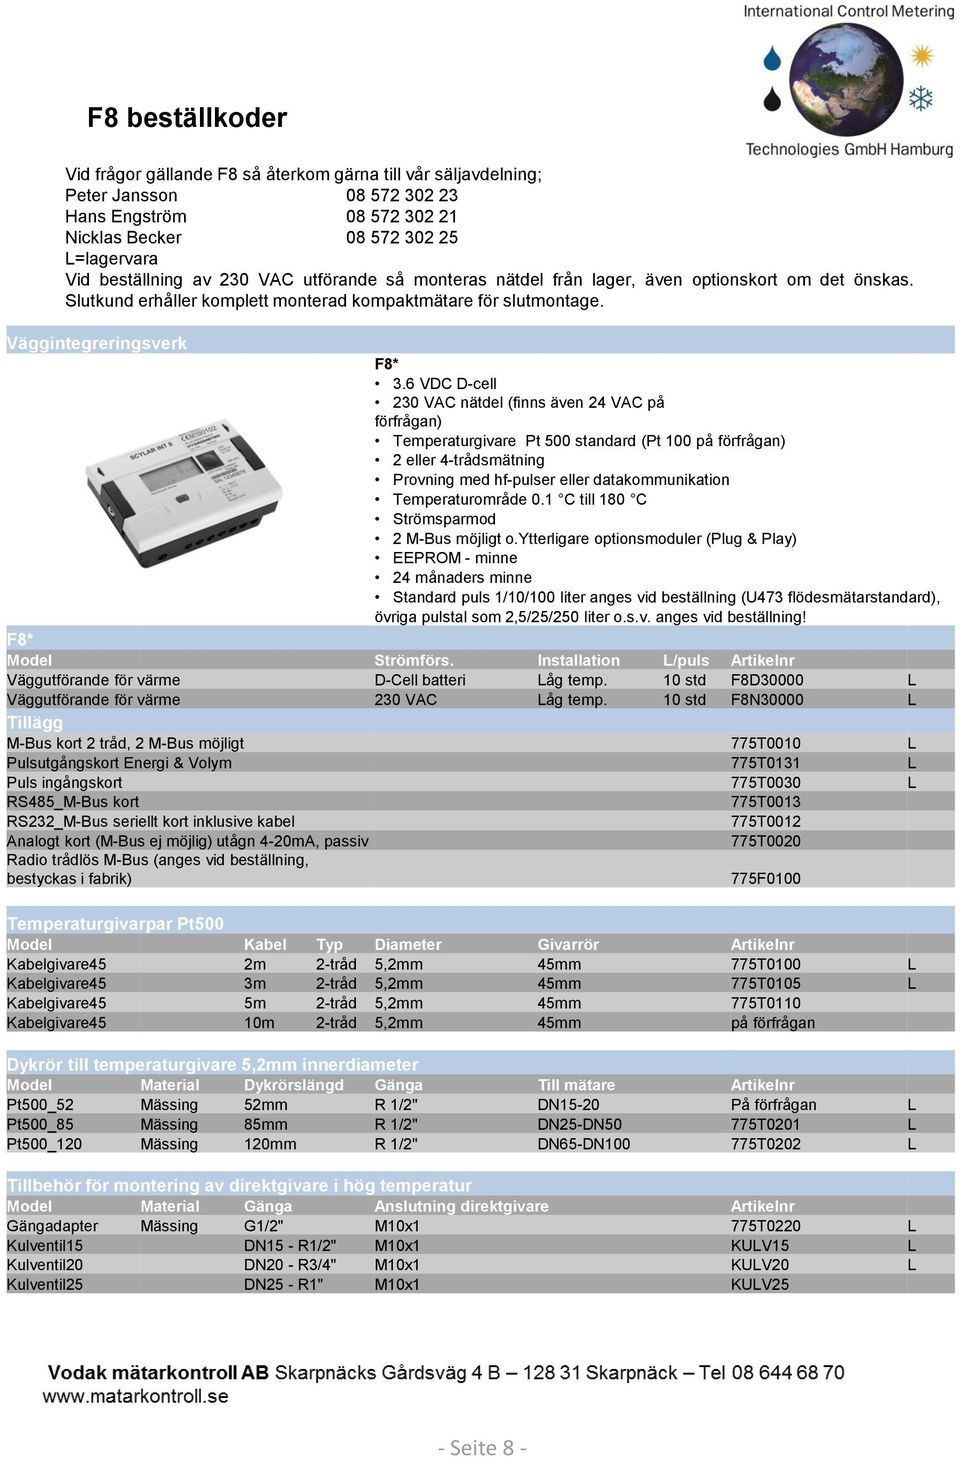 6 VDC D-cell 230 VAC nätdel (finns även 24 VAC på förfrågan) Temperaturgivare Pt 500 standard (Pt 100 på förfrågan) 2 eller 4-trådsmätning Provning med hf-pulser eller datakommunikation